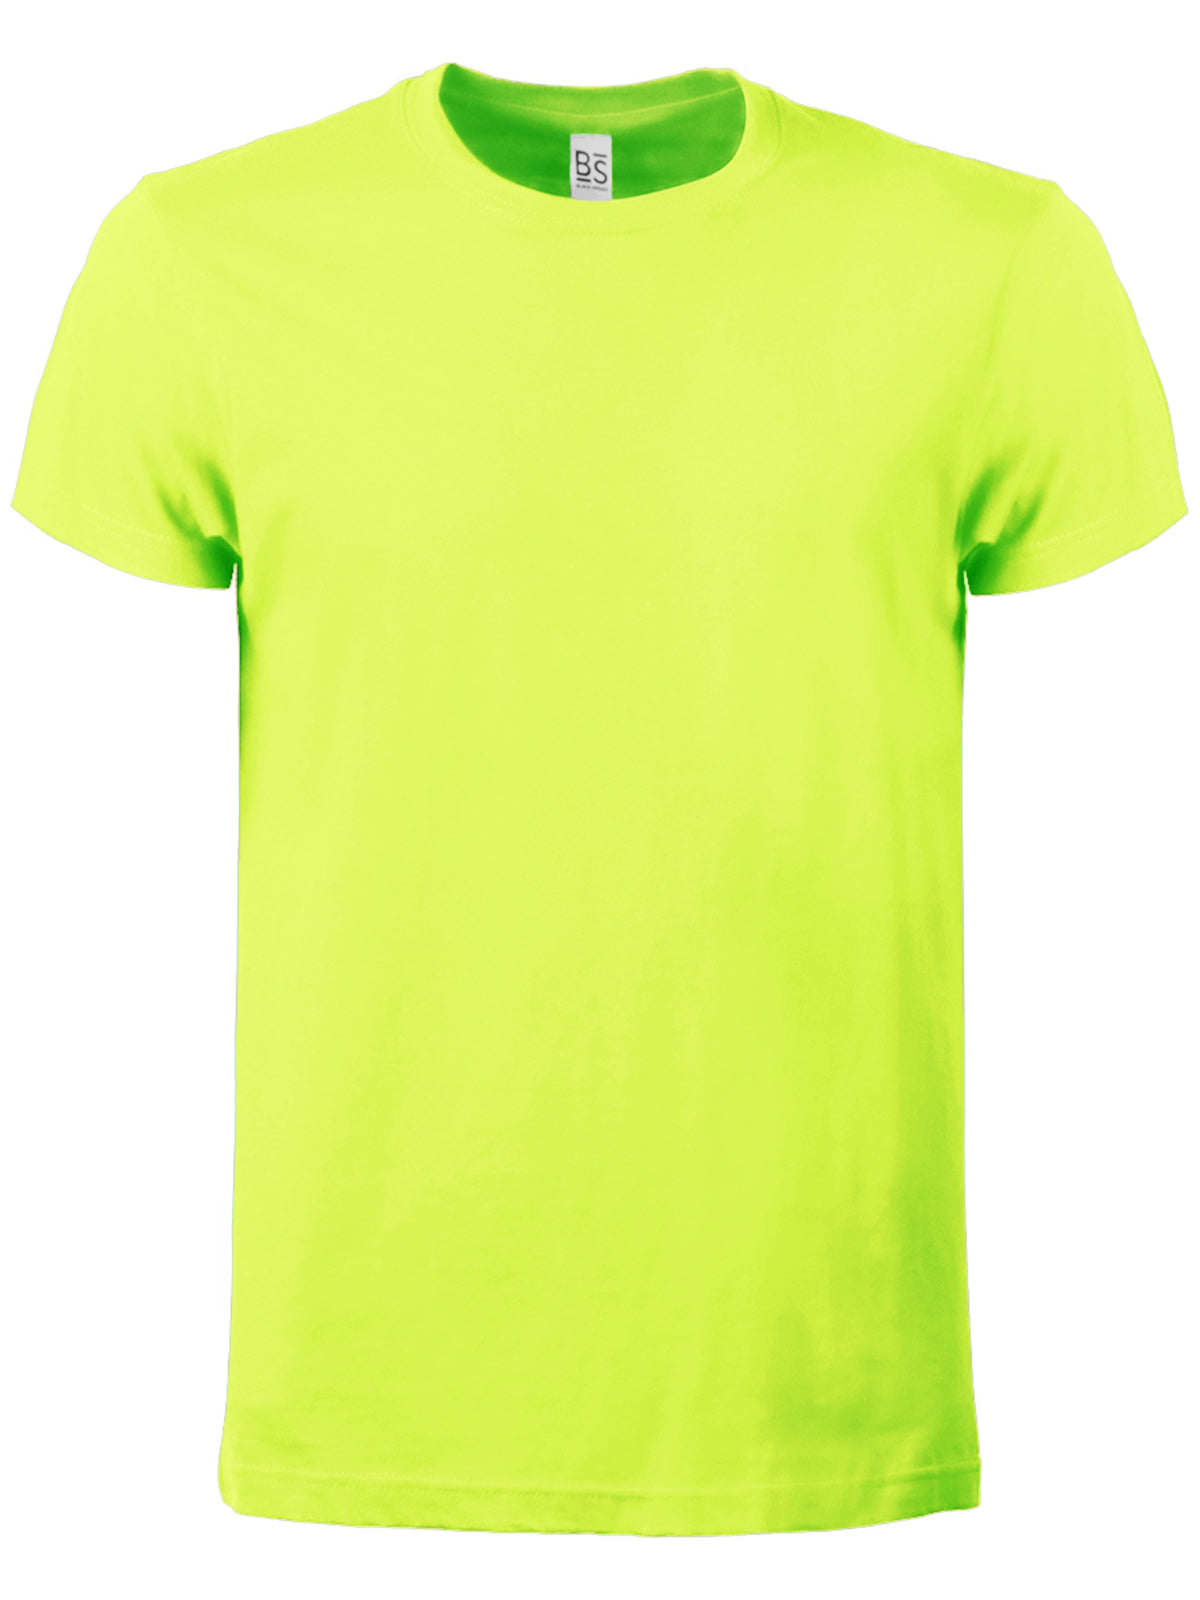 Maglietta Uomo T-shirt Cotone Manica Corta da Lavoro Workwear